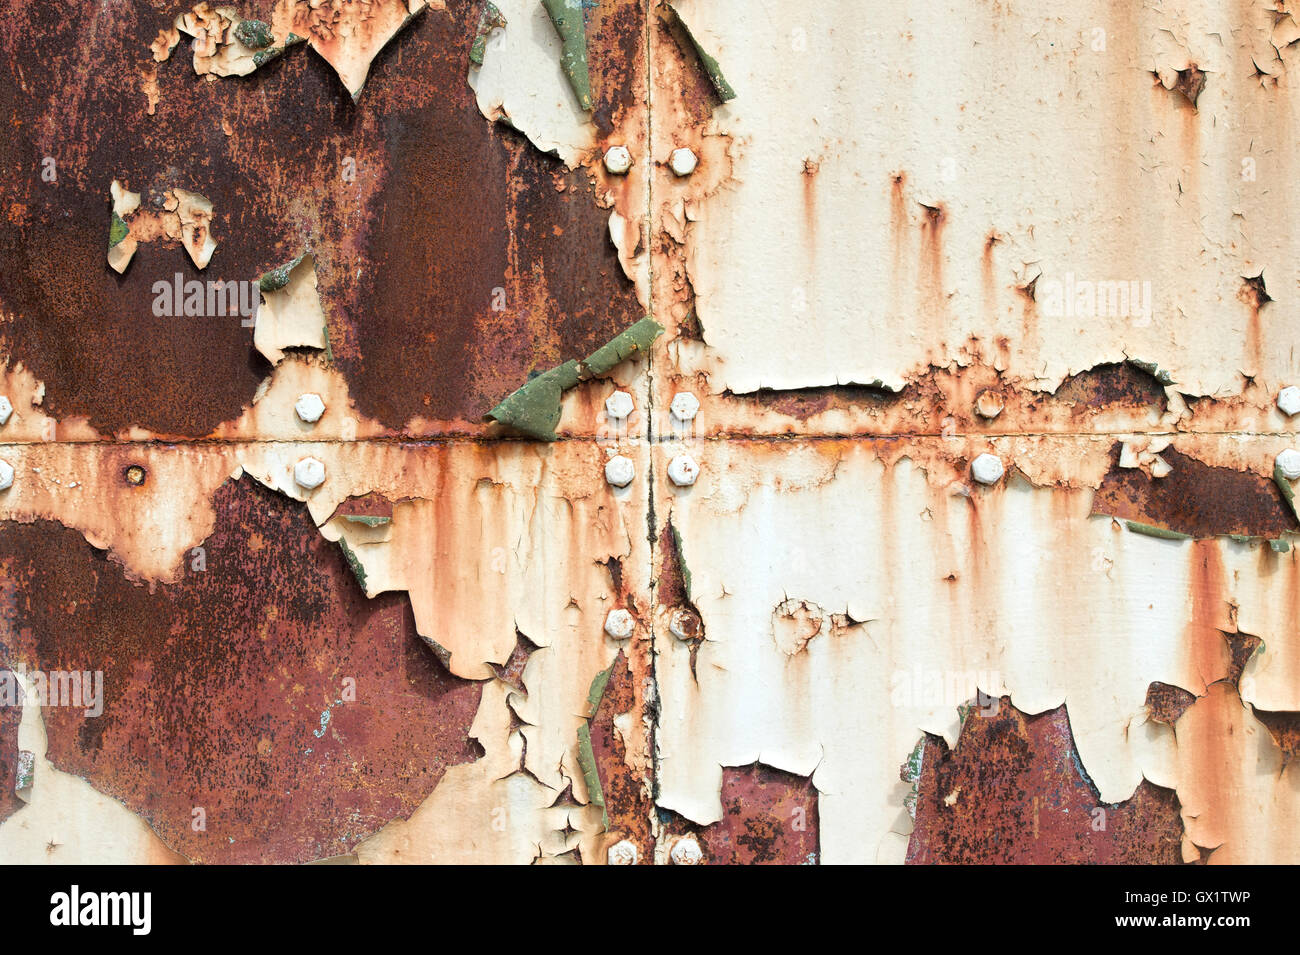 Peeling paint rust and rivets texture. Old metal garage door Stock Photo